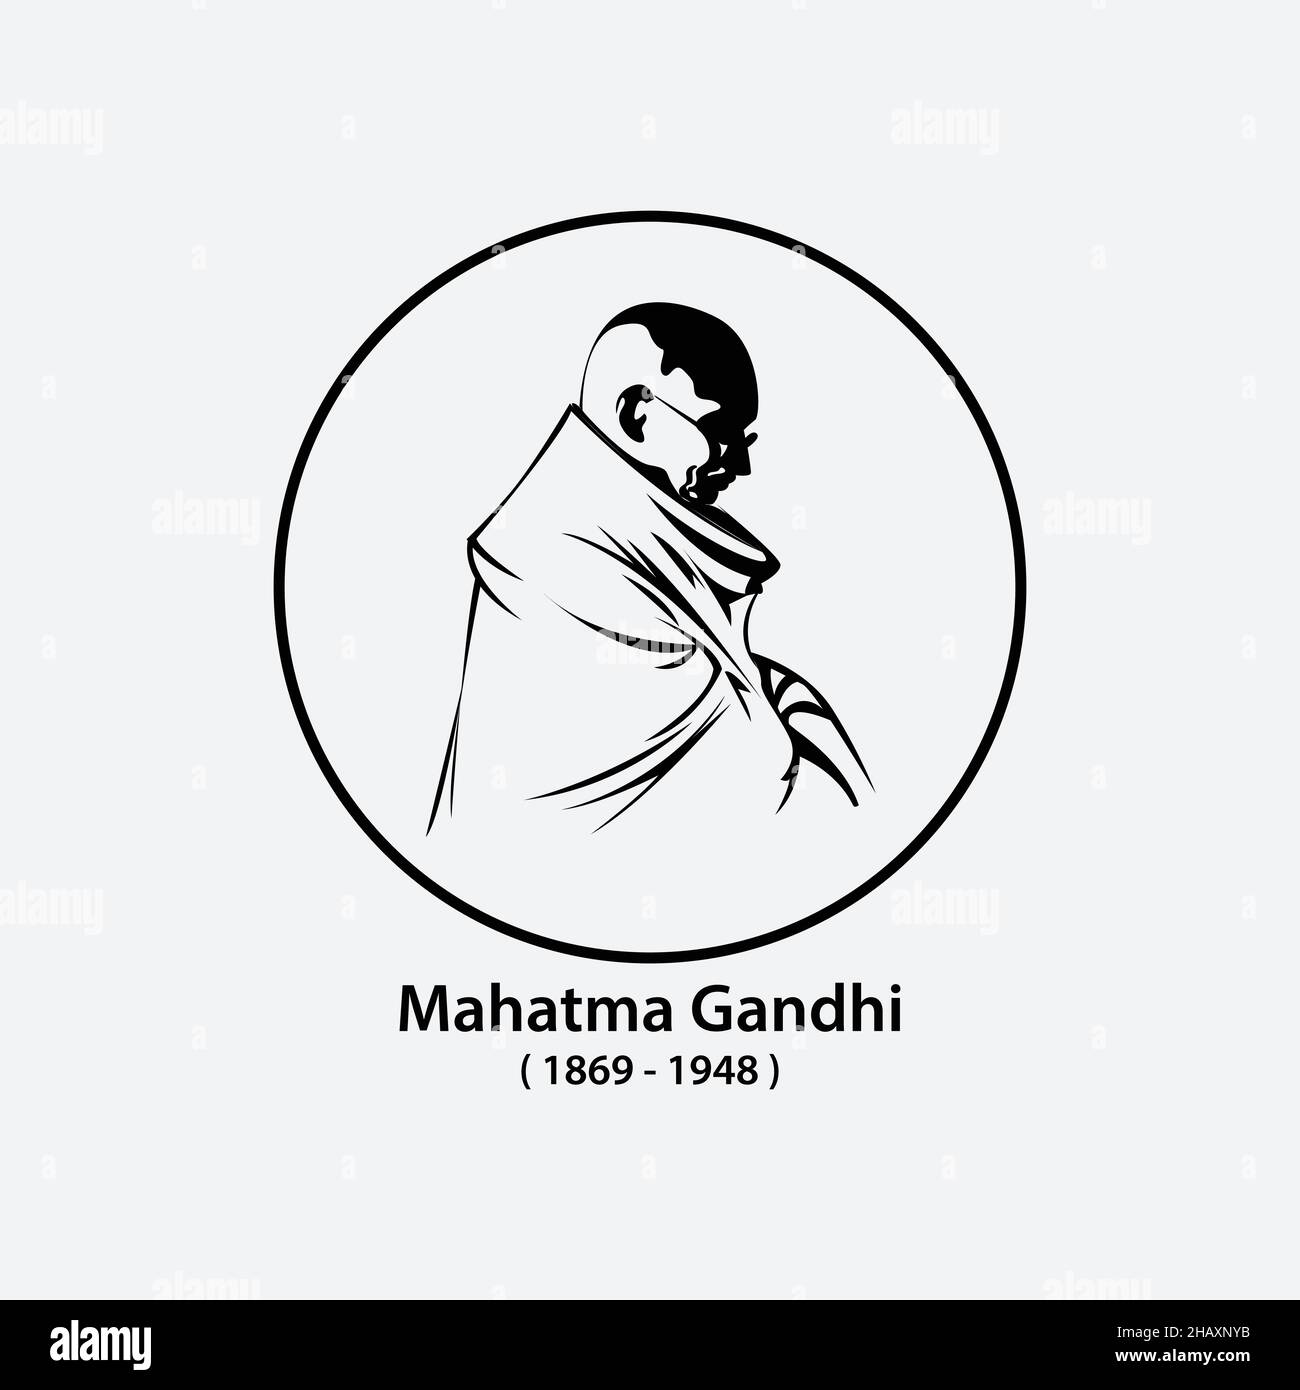 Gandhi, Indiens Vater der Nation. Mahatma Gandhi Vektorbild, Führer der indischen Unabhängigkeitsbewegung gegen die britische Herrschaft. Die beliebtesten Perso Stock Vektor